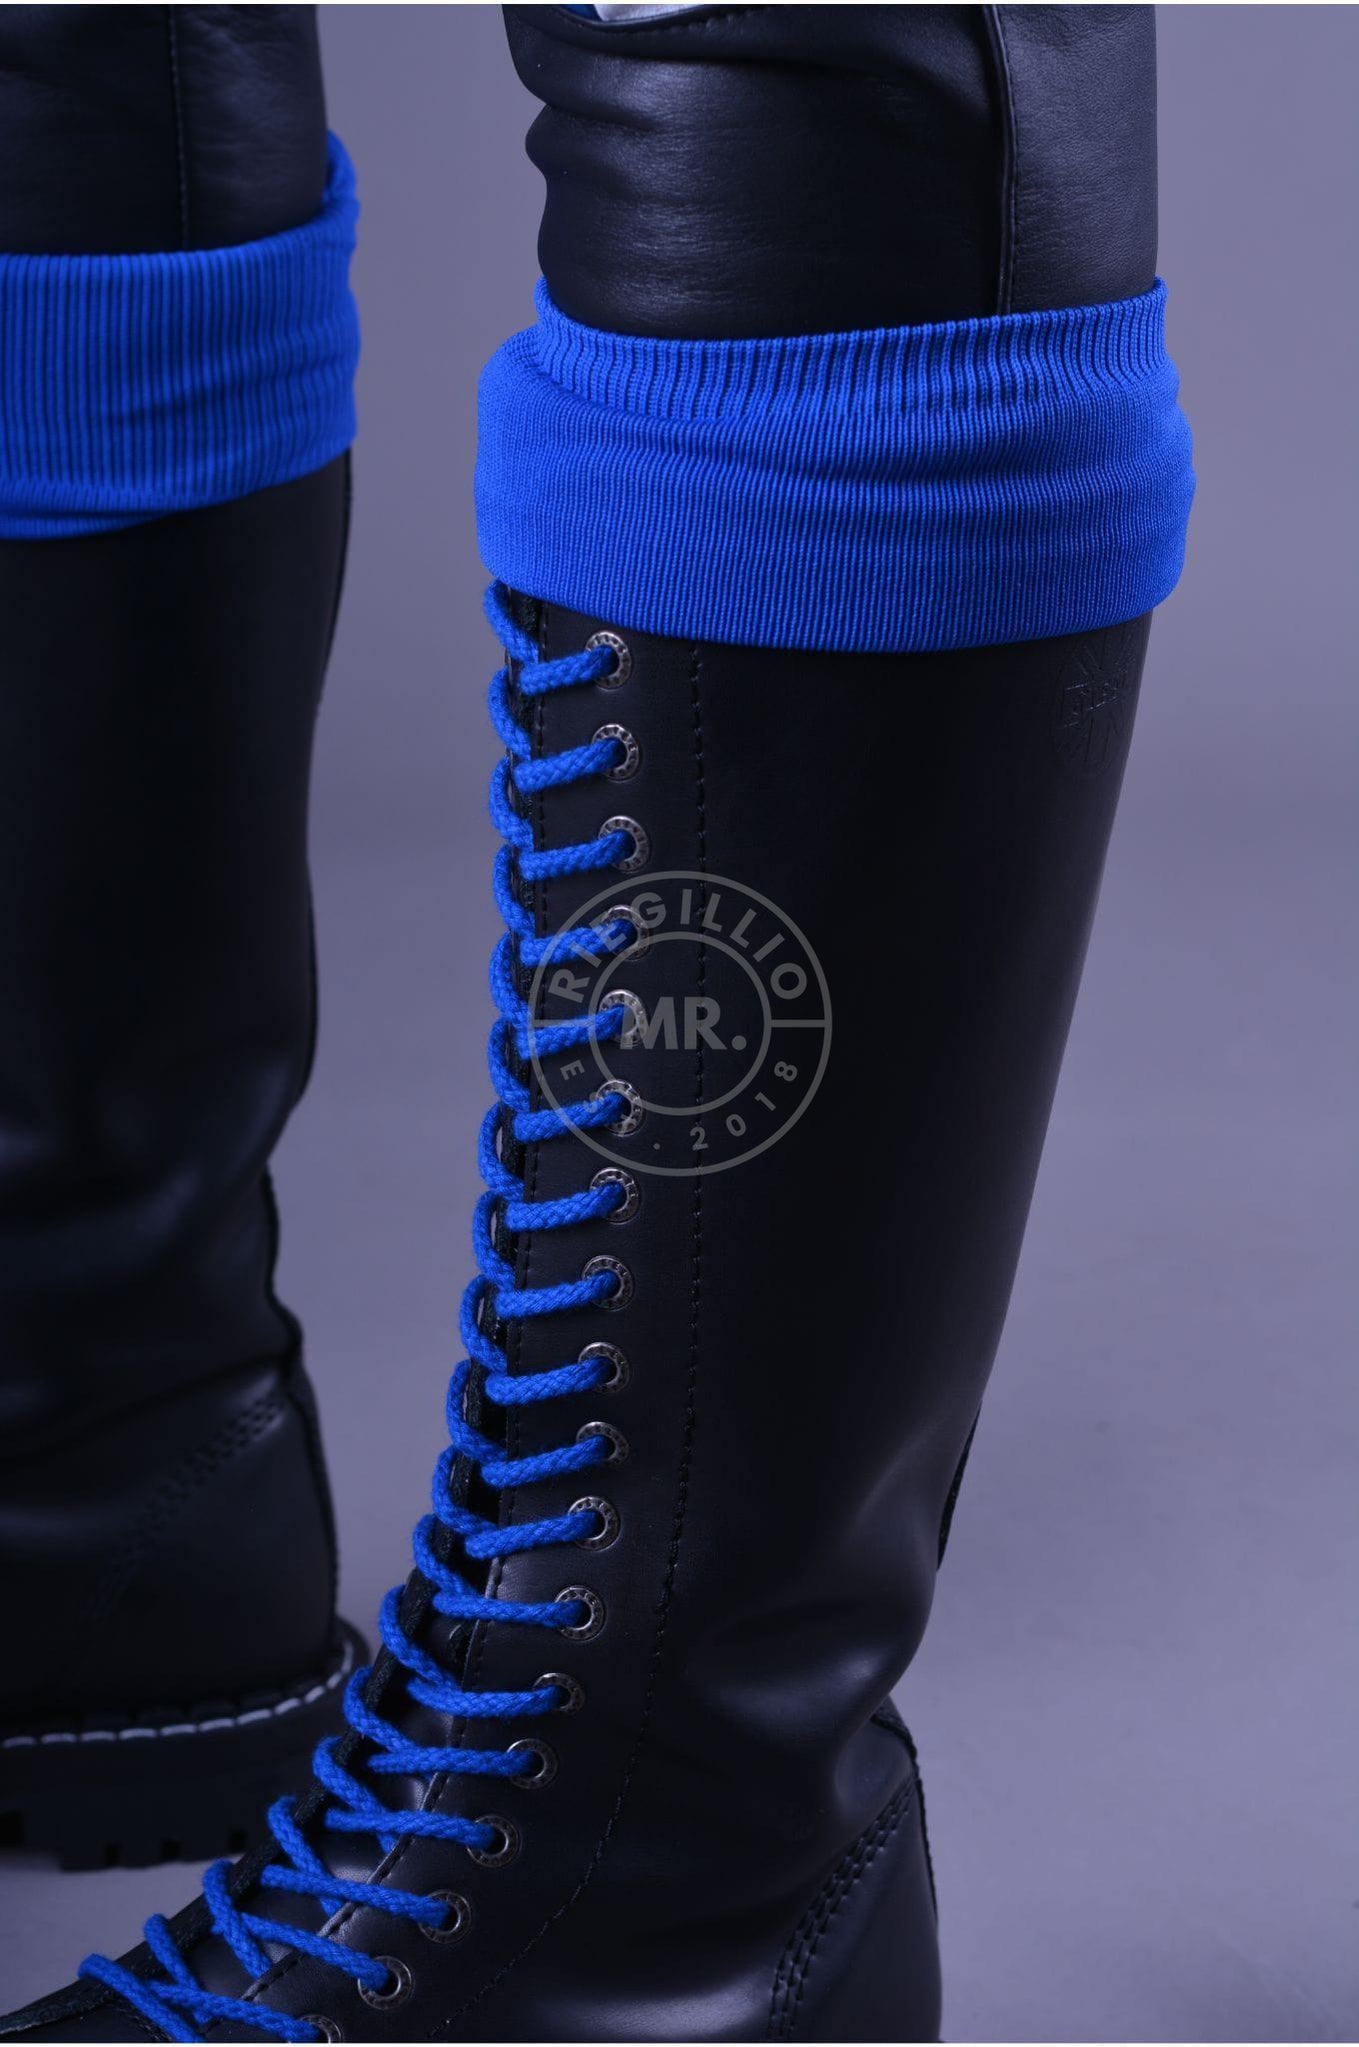 Football Socks Blue-at MR. Riegillio